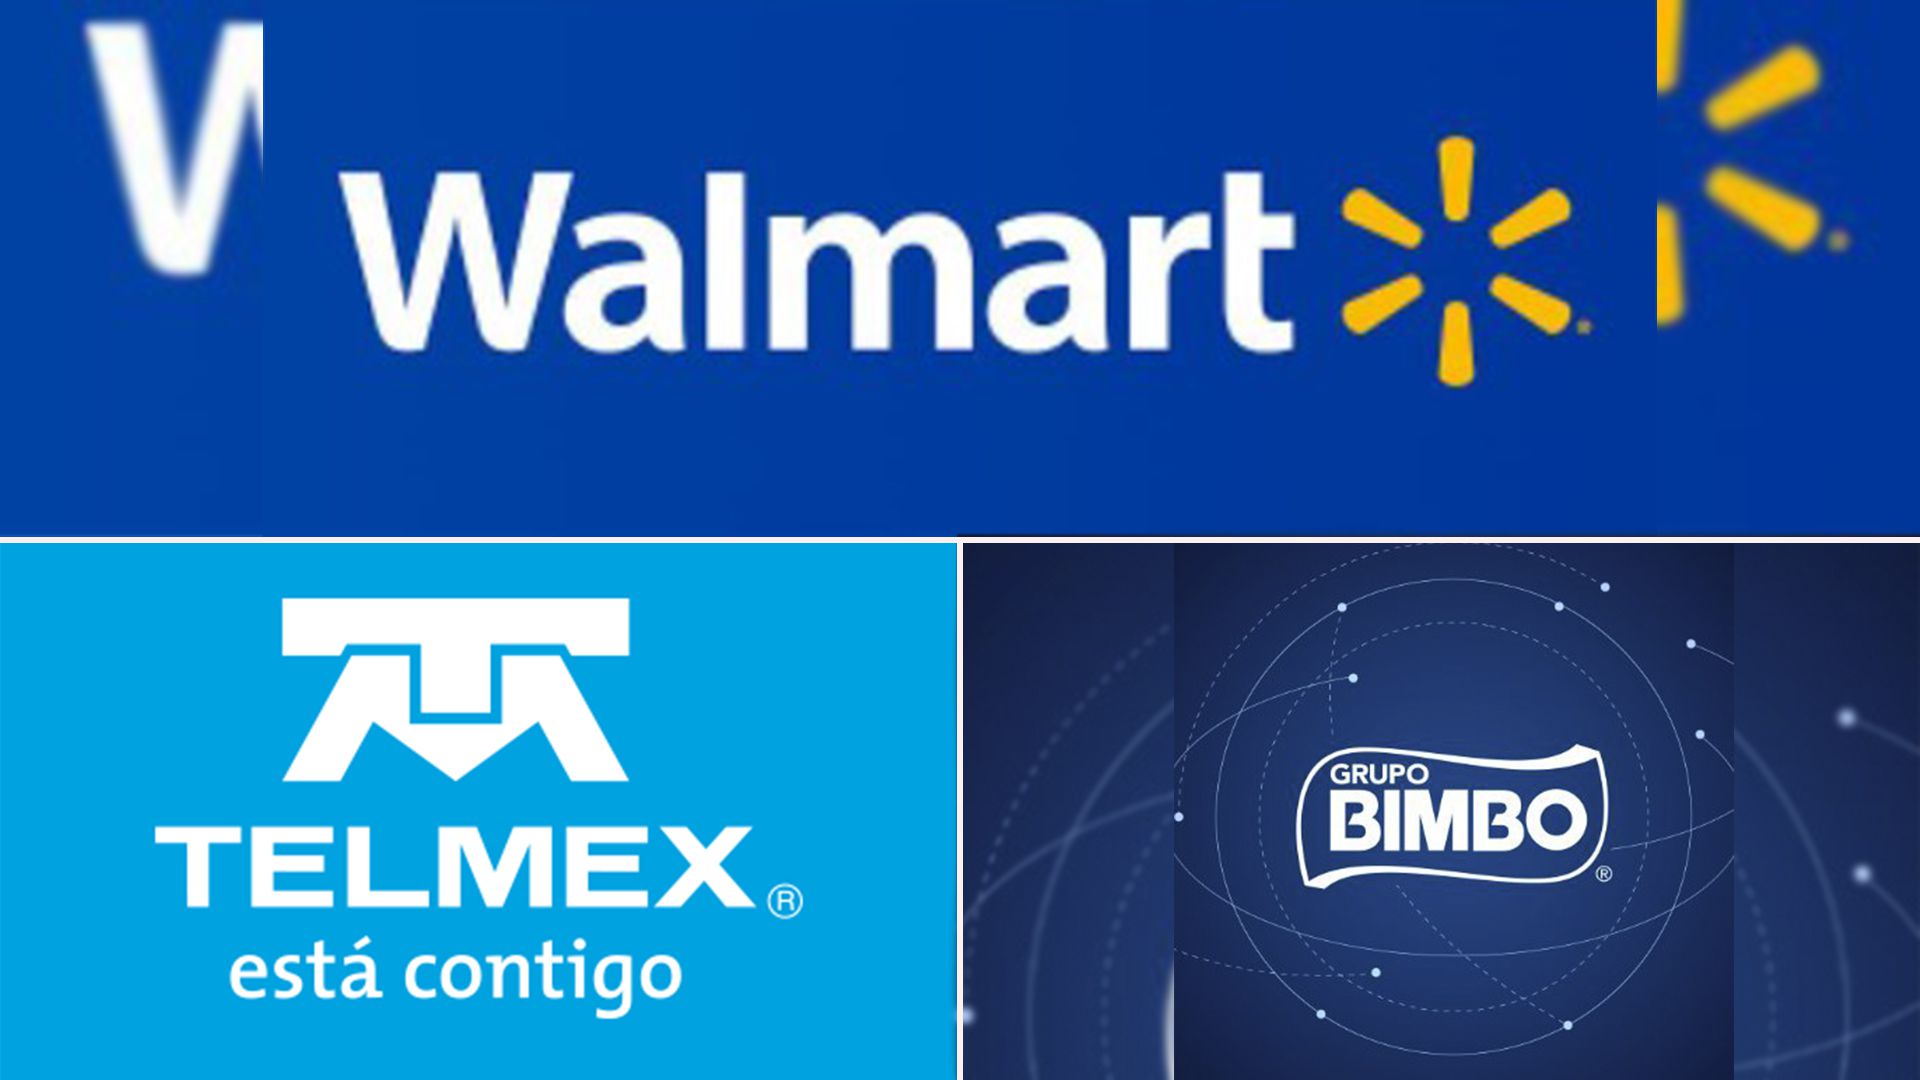 Bimbo, Telmex, y Walmart se unirán a la estrategia para combatir la inflación 
Foto Twitter @Grupo_Bimbo @Telmex Instagram @walmartmexico